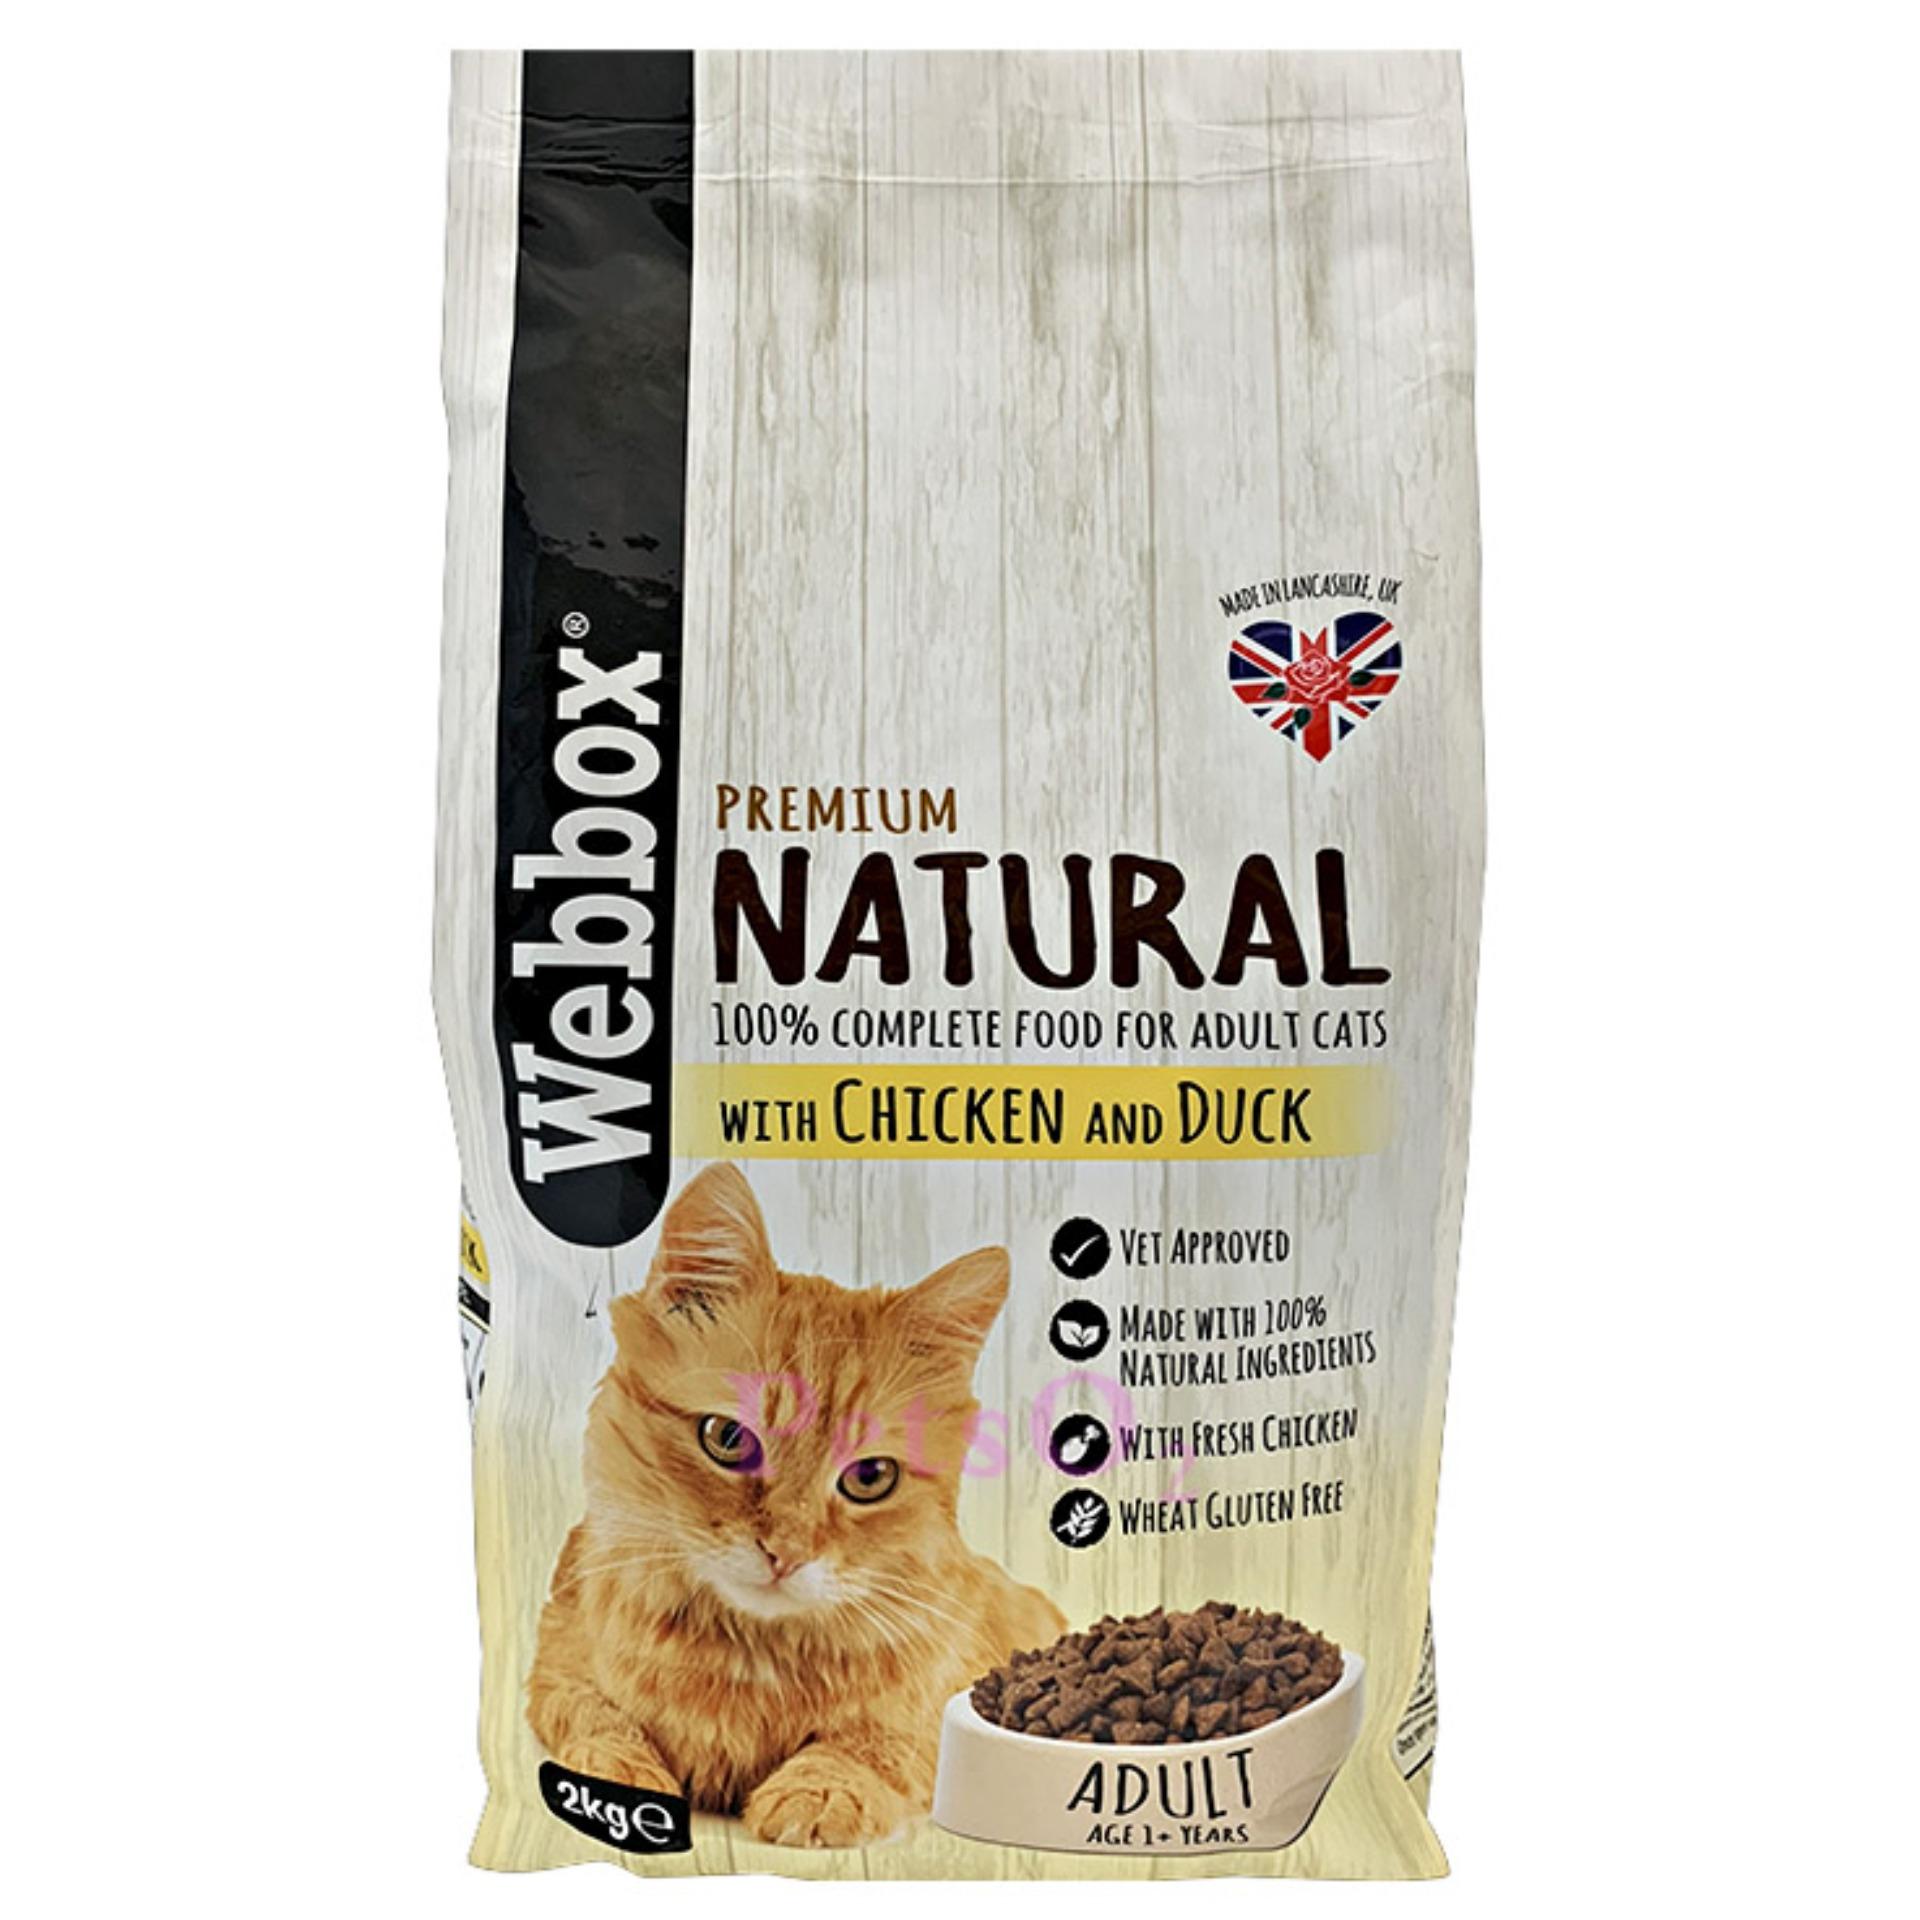 webbox natural cat food